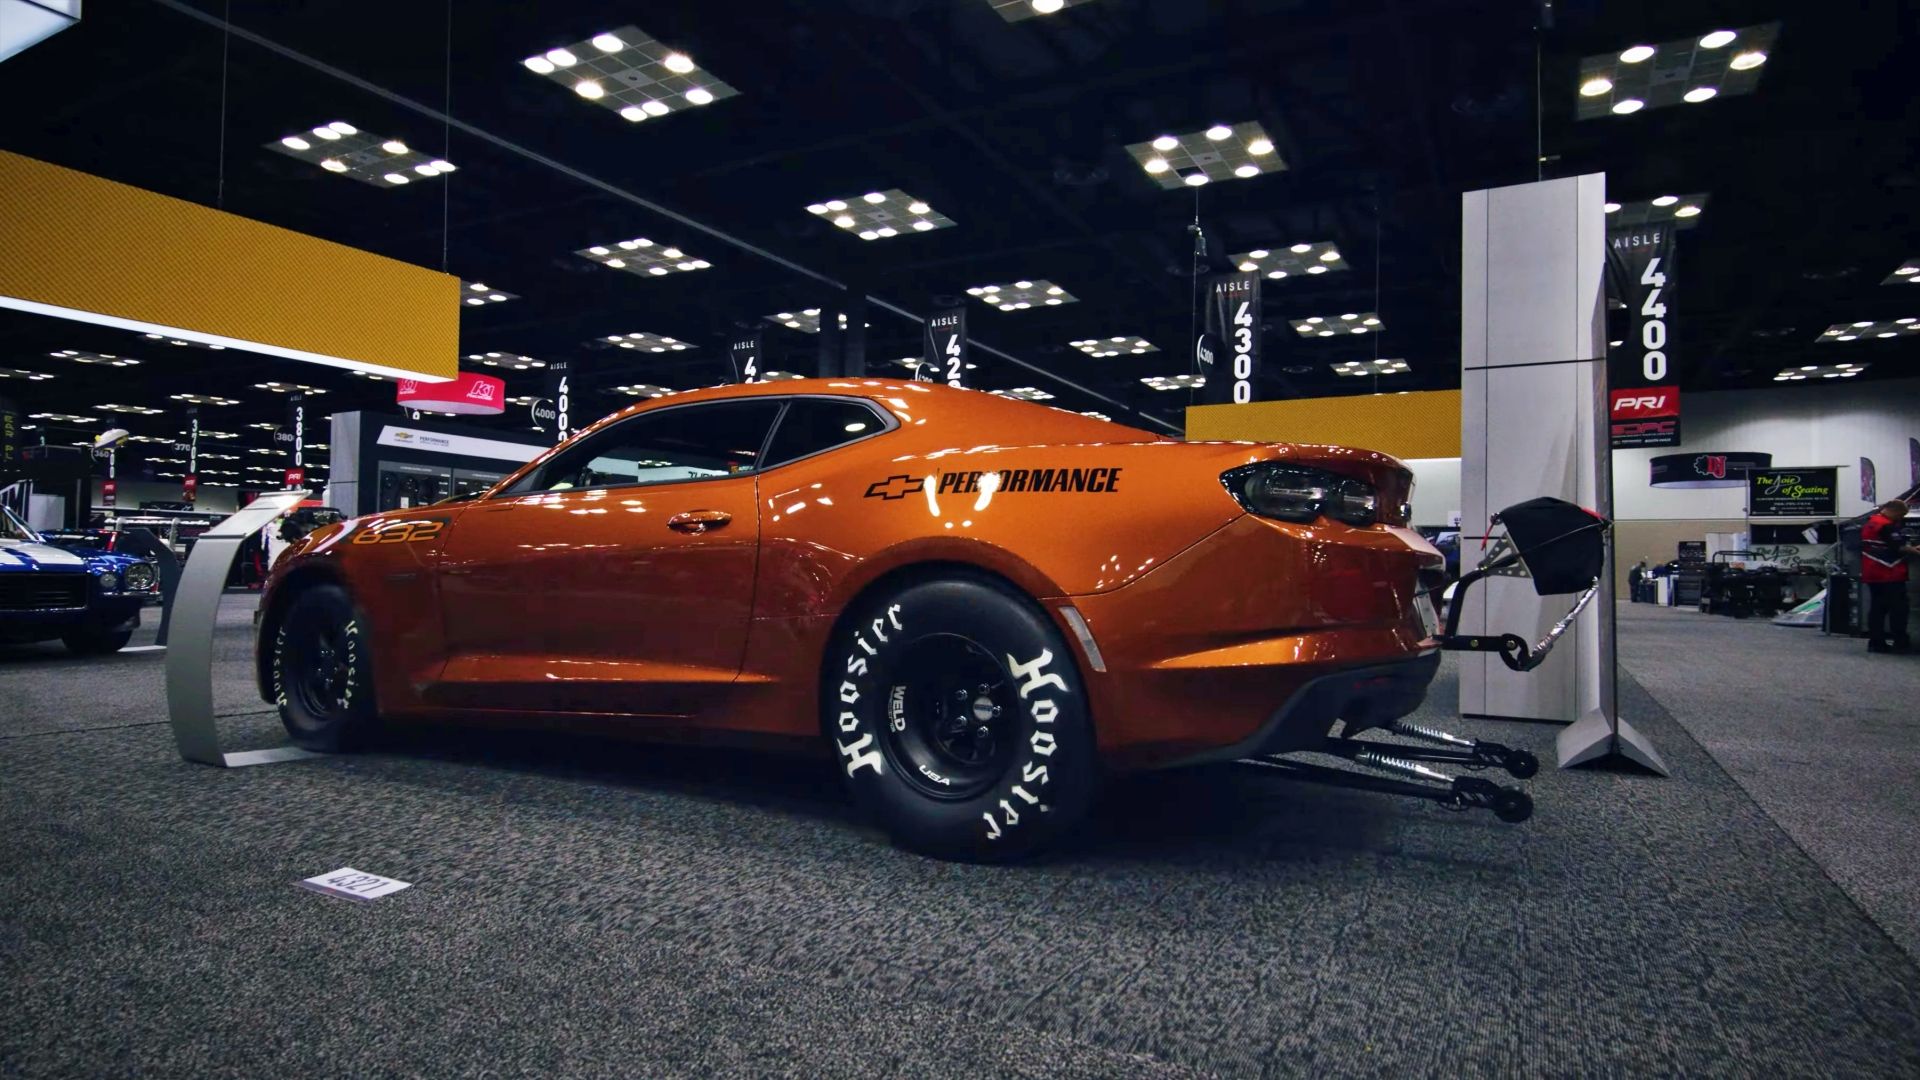 Orange 2023 Chevrolet COPO Camaro